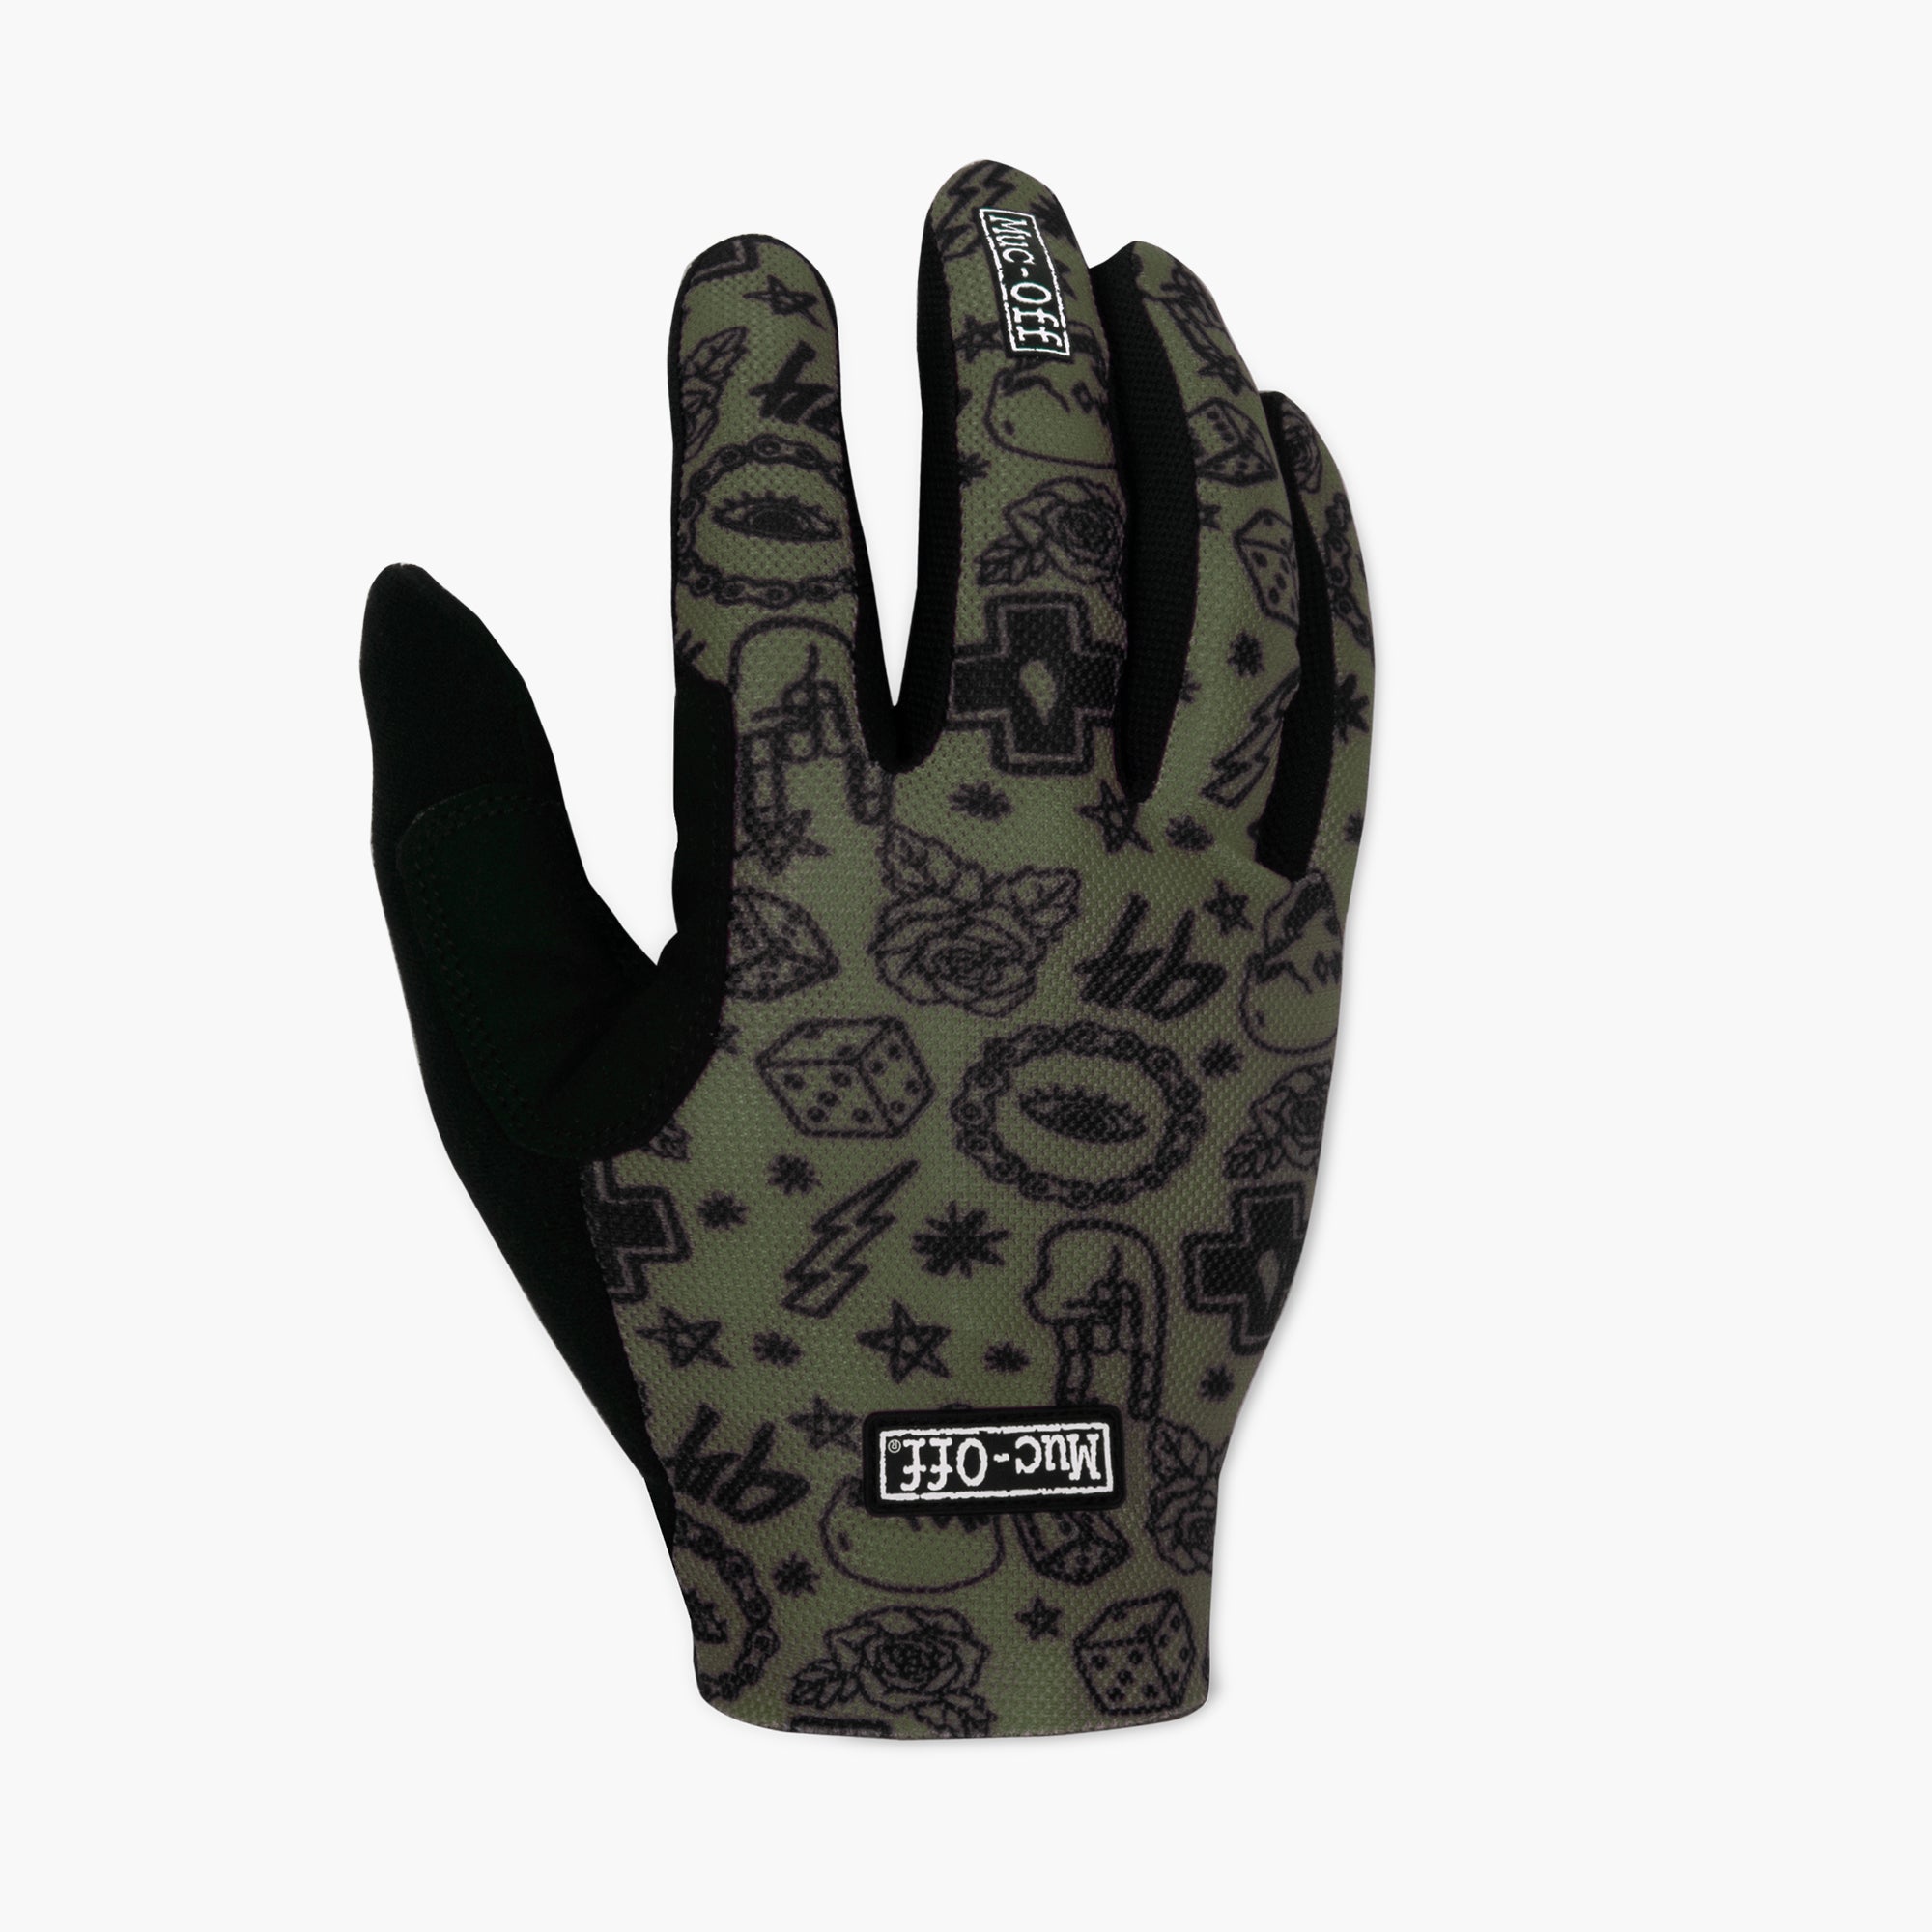 Photos - Cycling Gloves Summer Lightweight Mesh Rider Gloves - Green M 